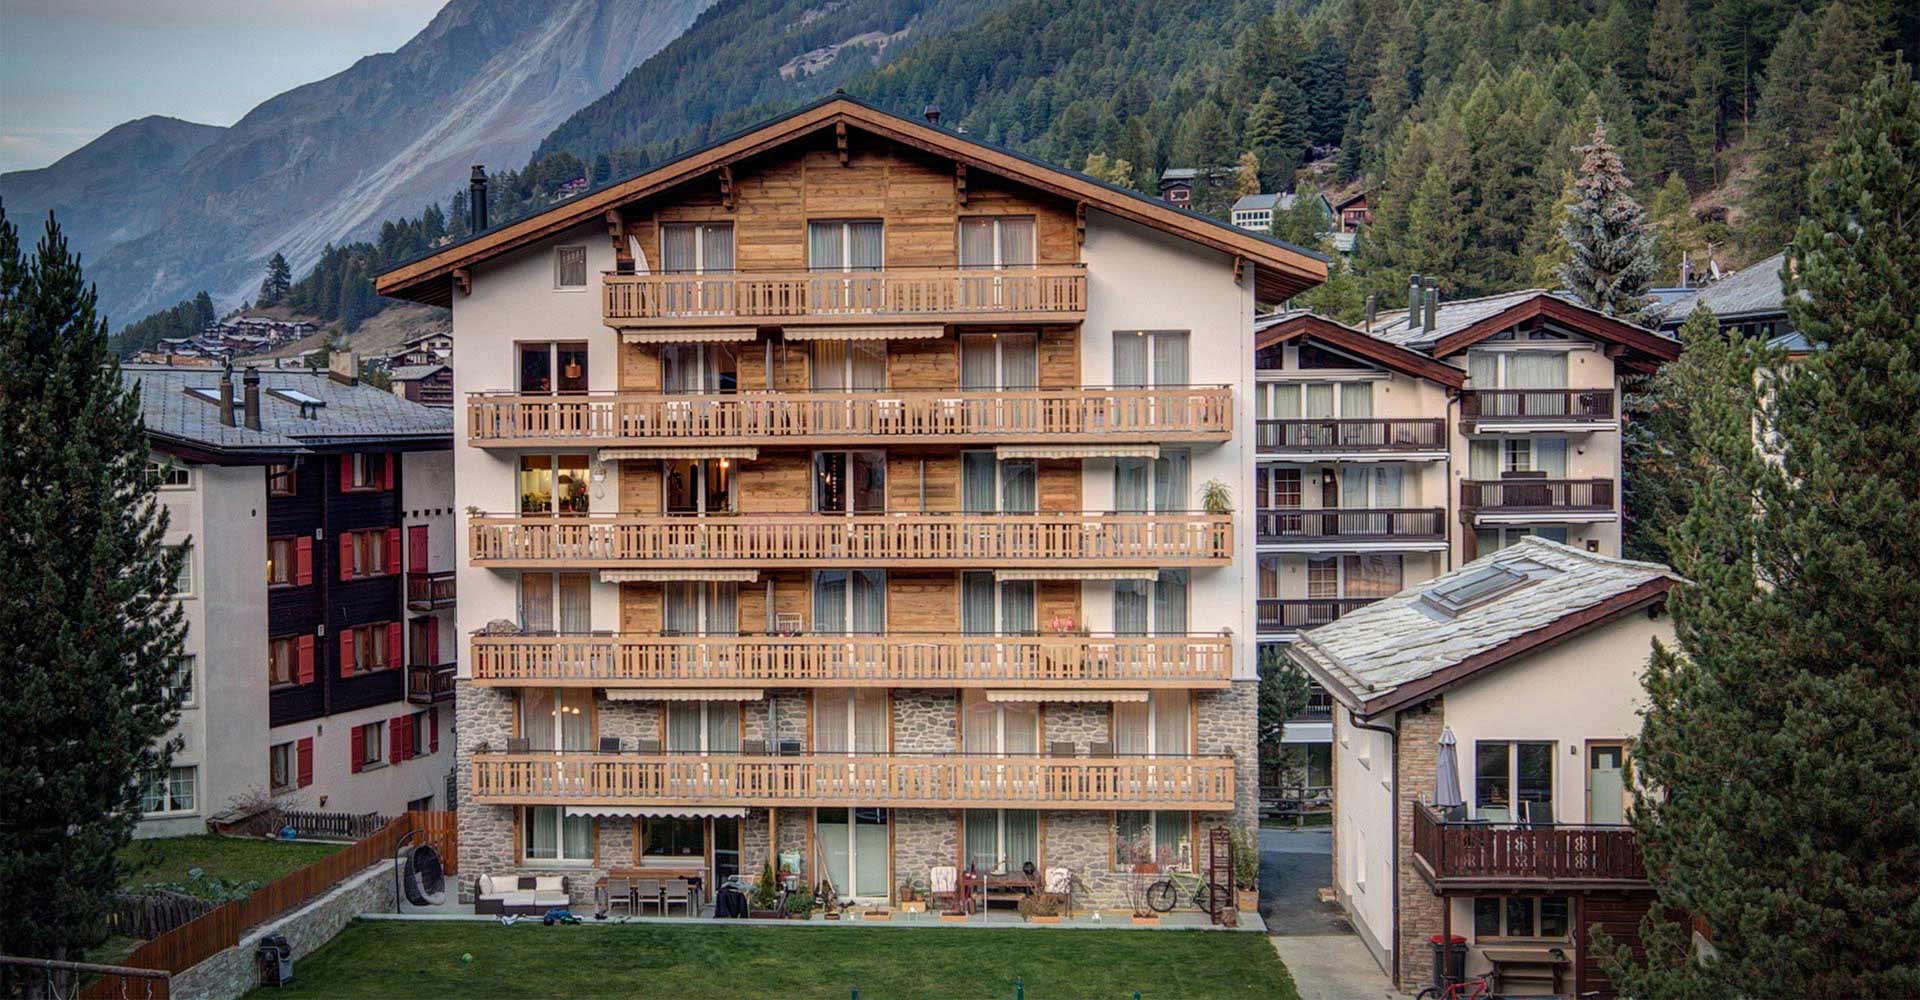 Mieten sie eien Ferienwohnung in Zermatt